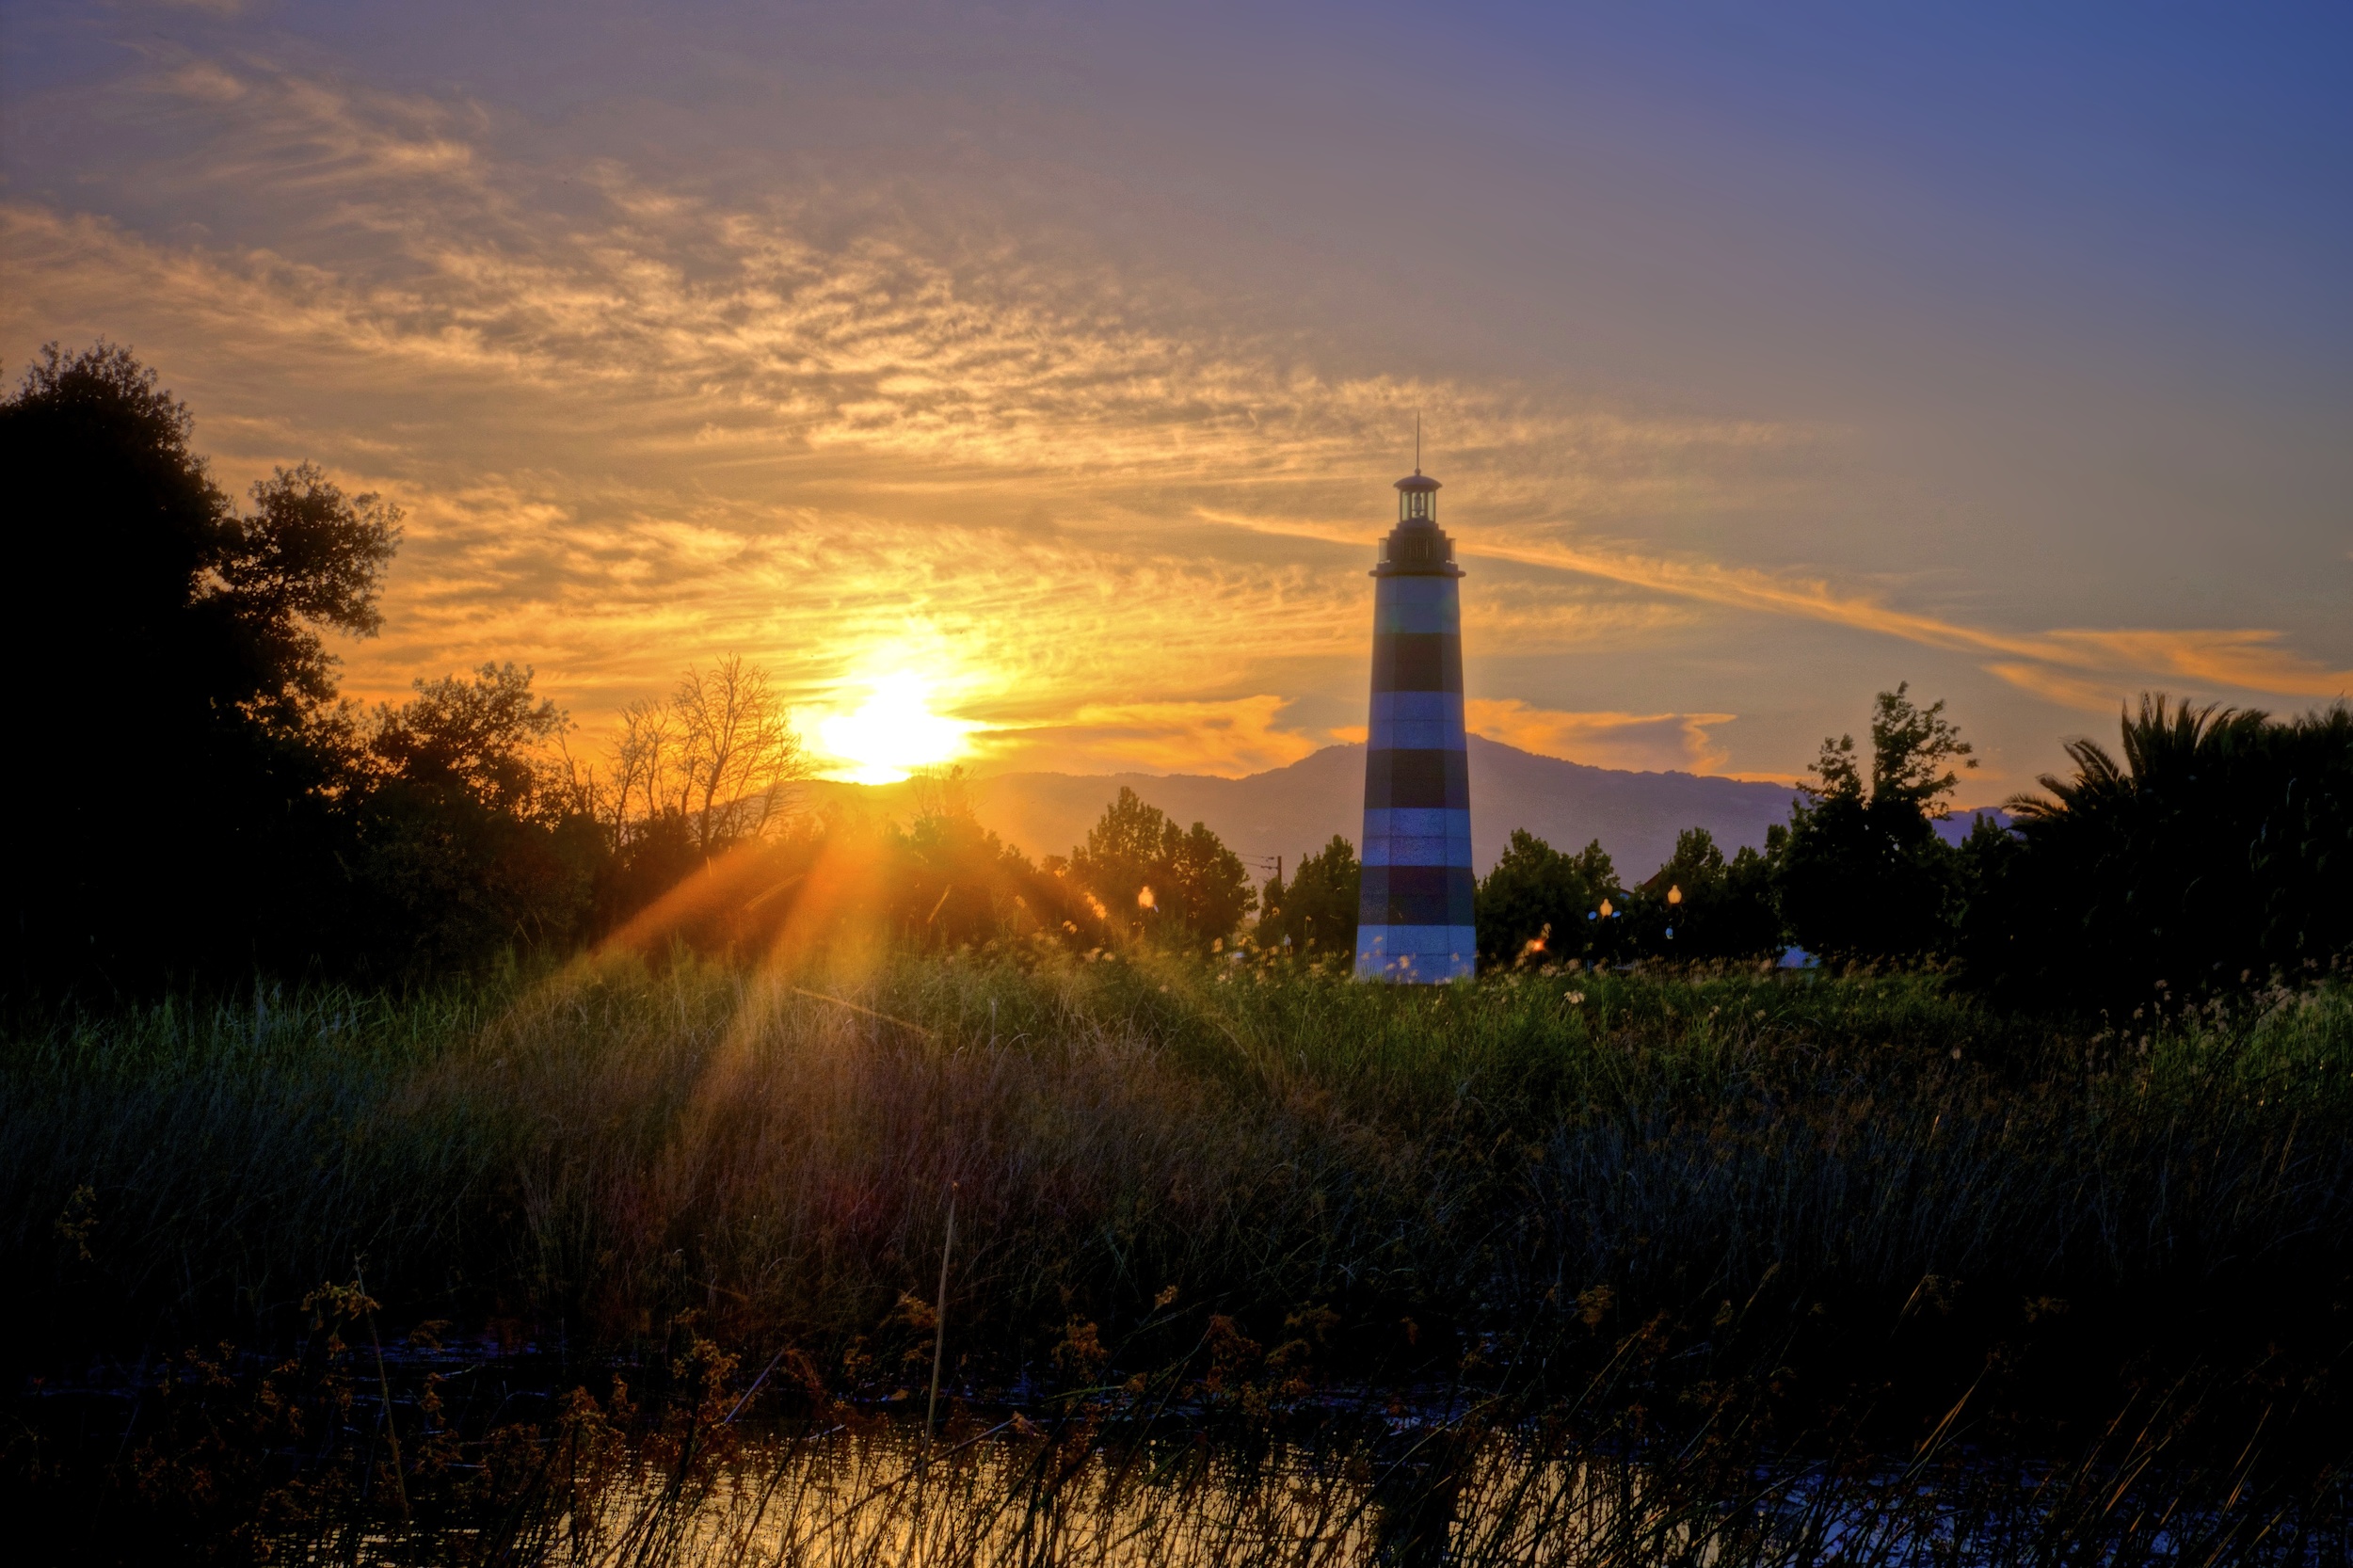 Suisun Marsh Sunset with Lighthouse